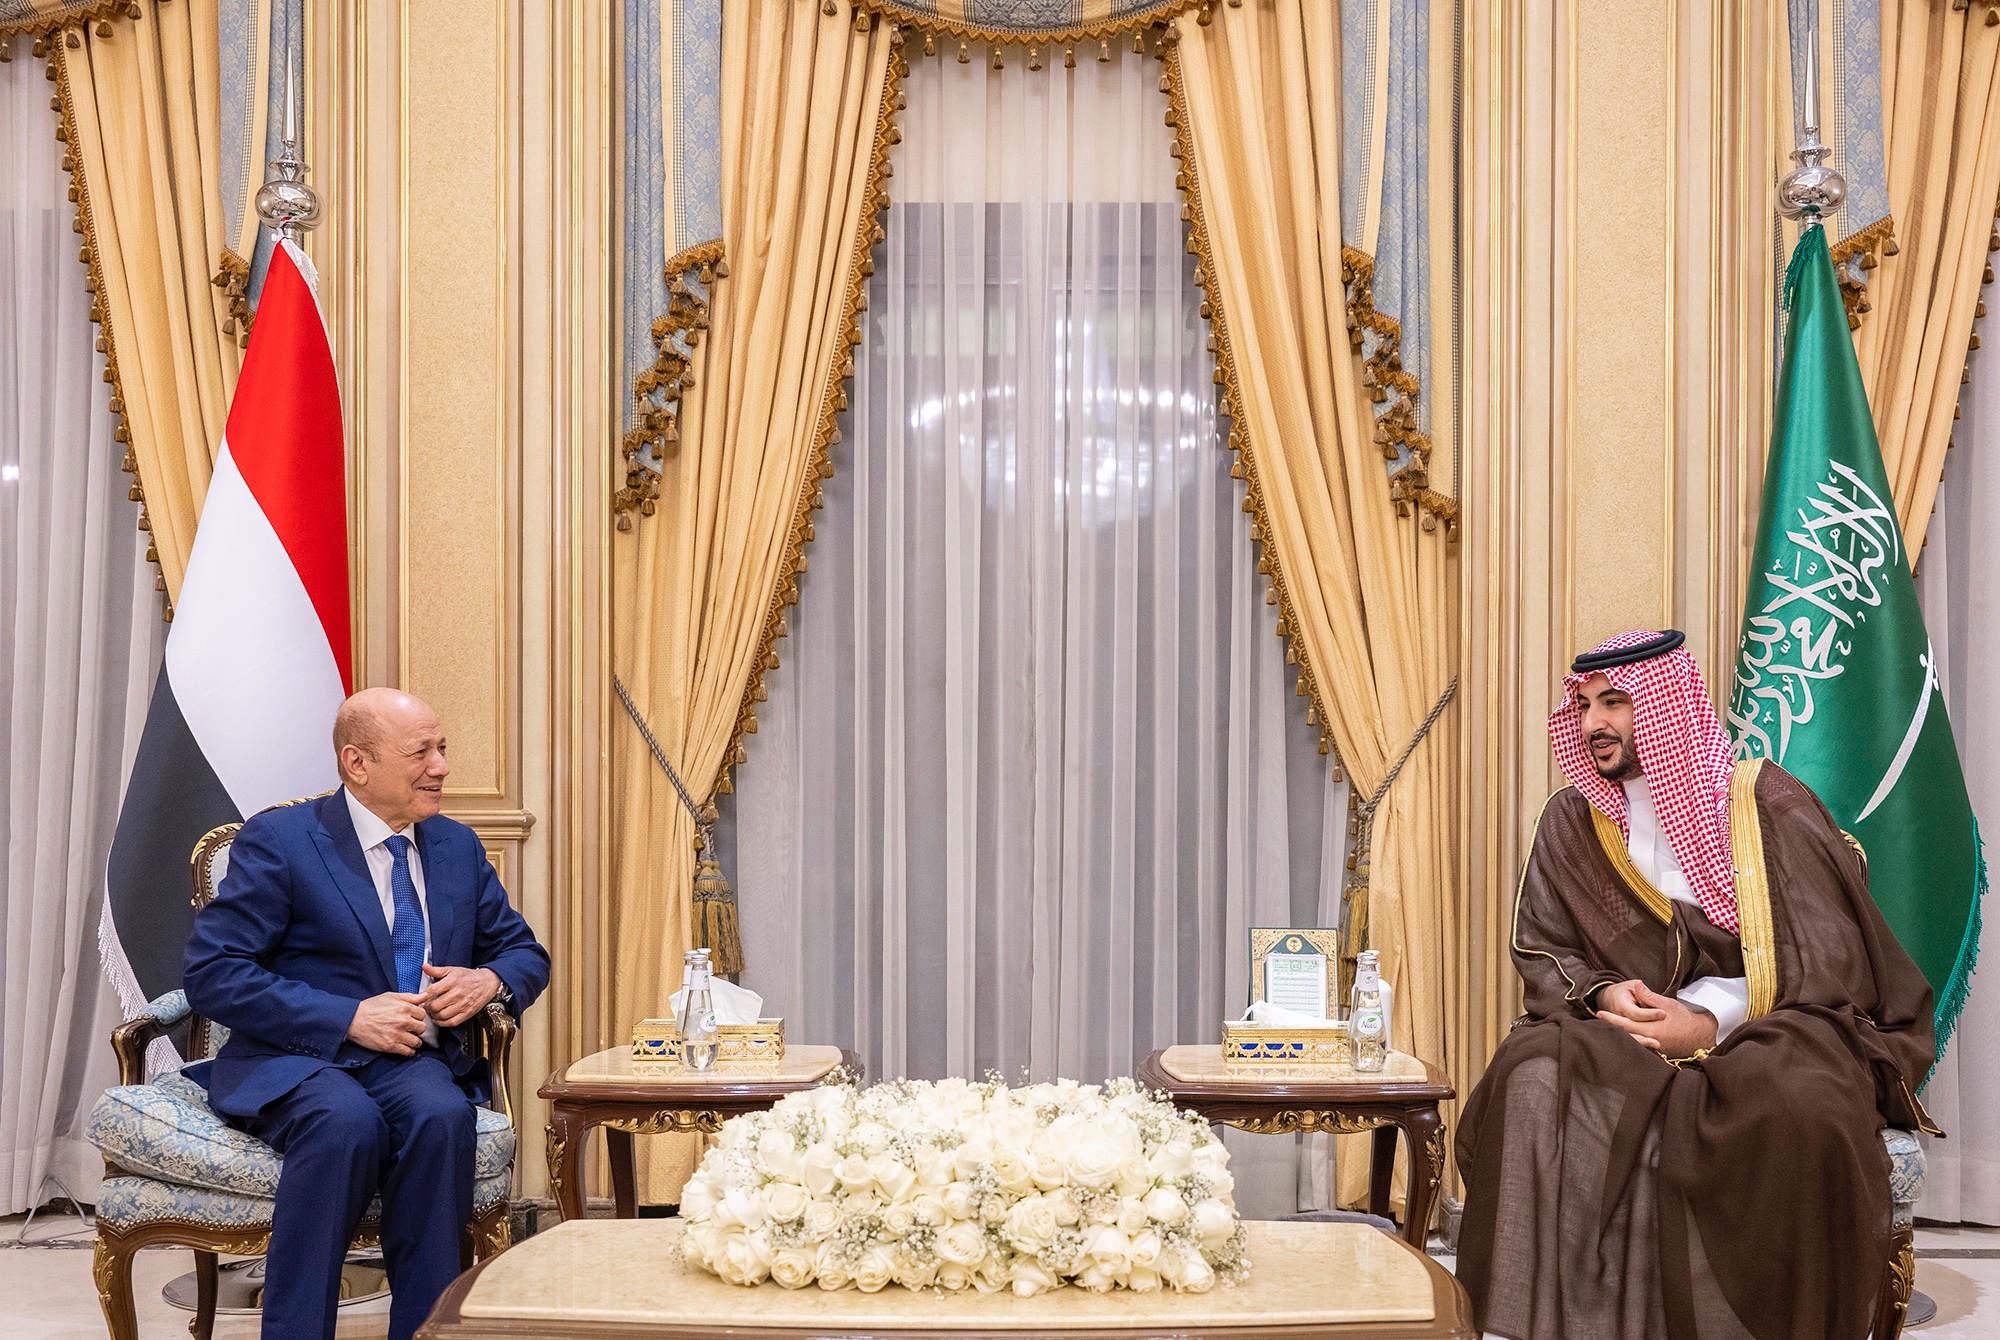 وزير الدفاع السعودي الأمير خالد بن سلمان بن عبدالعزيز، ورئيس مجلس القيادة الرئاسي اليمني الدكتور رشاد محمد العليمي (تويتر)